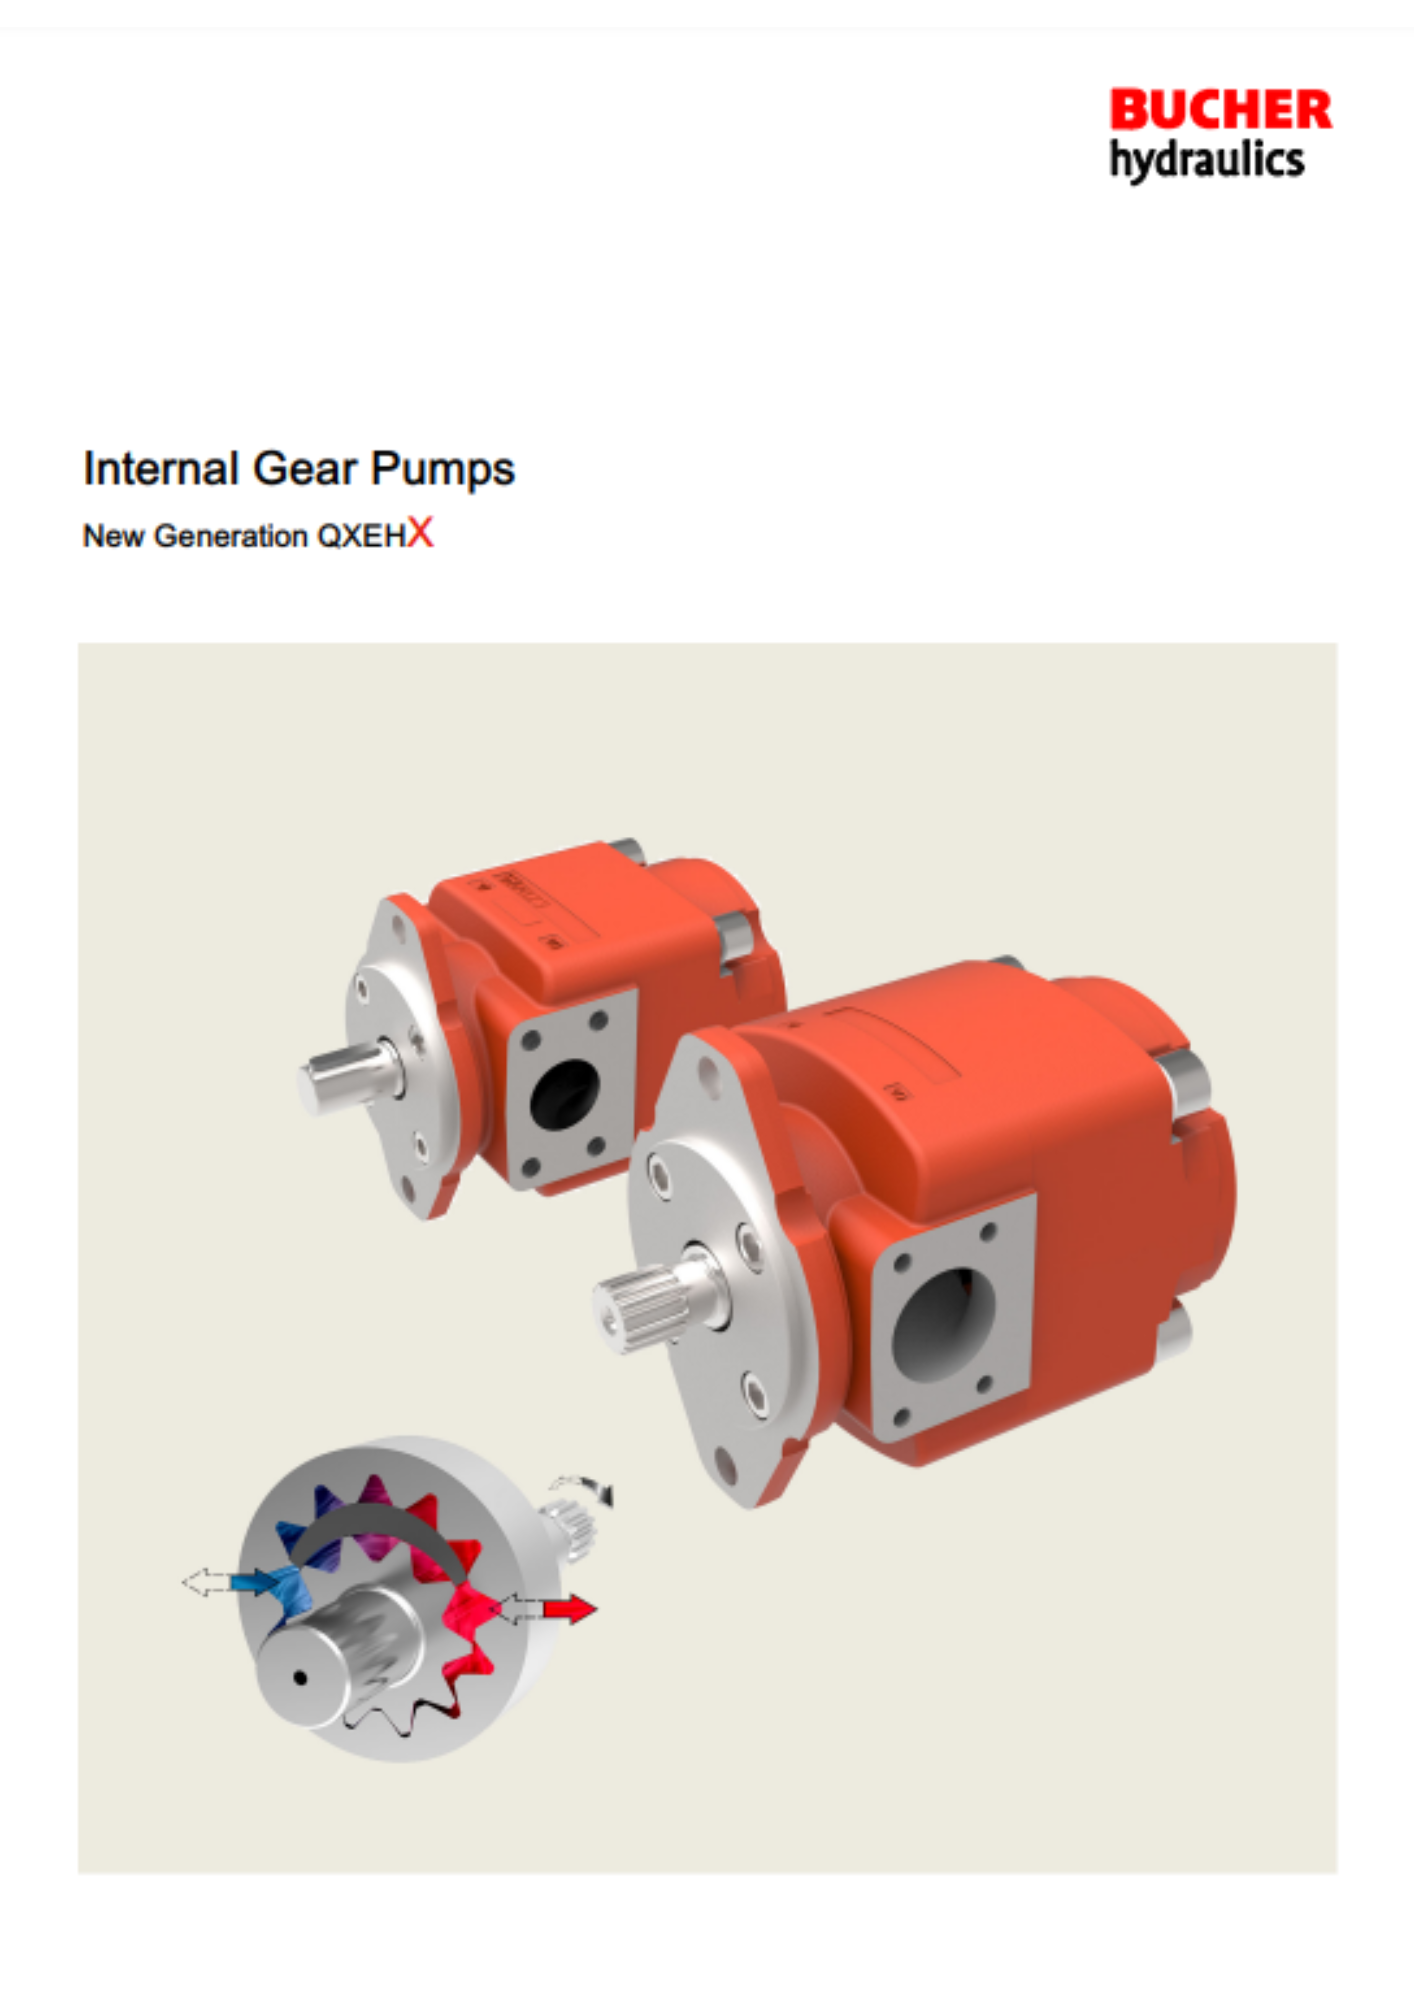 Bucher: QXEHX internal gear pumps